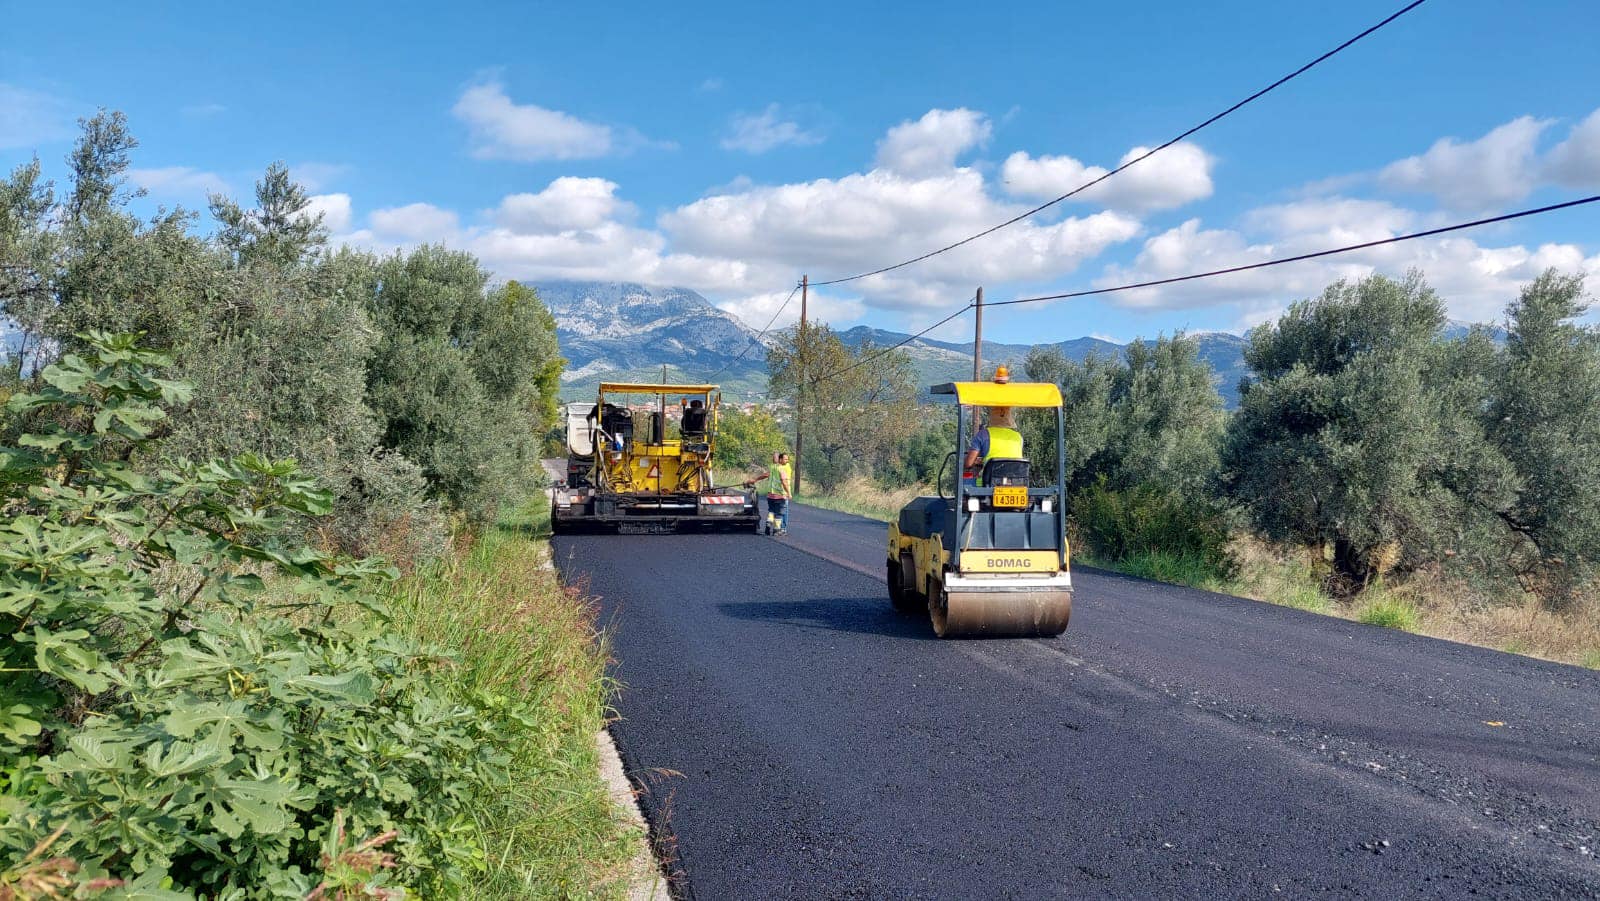 Εύβοια: Σε ποιο δρόμο ολοκληρώθηκαν έργα ασφαλτόστρωσης